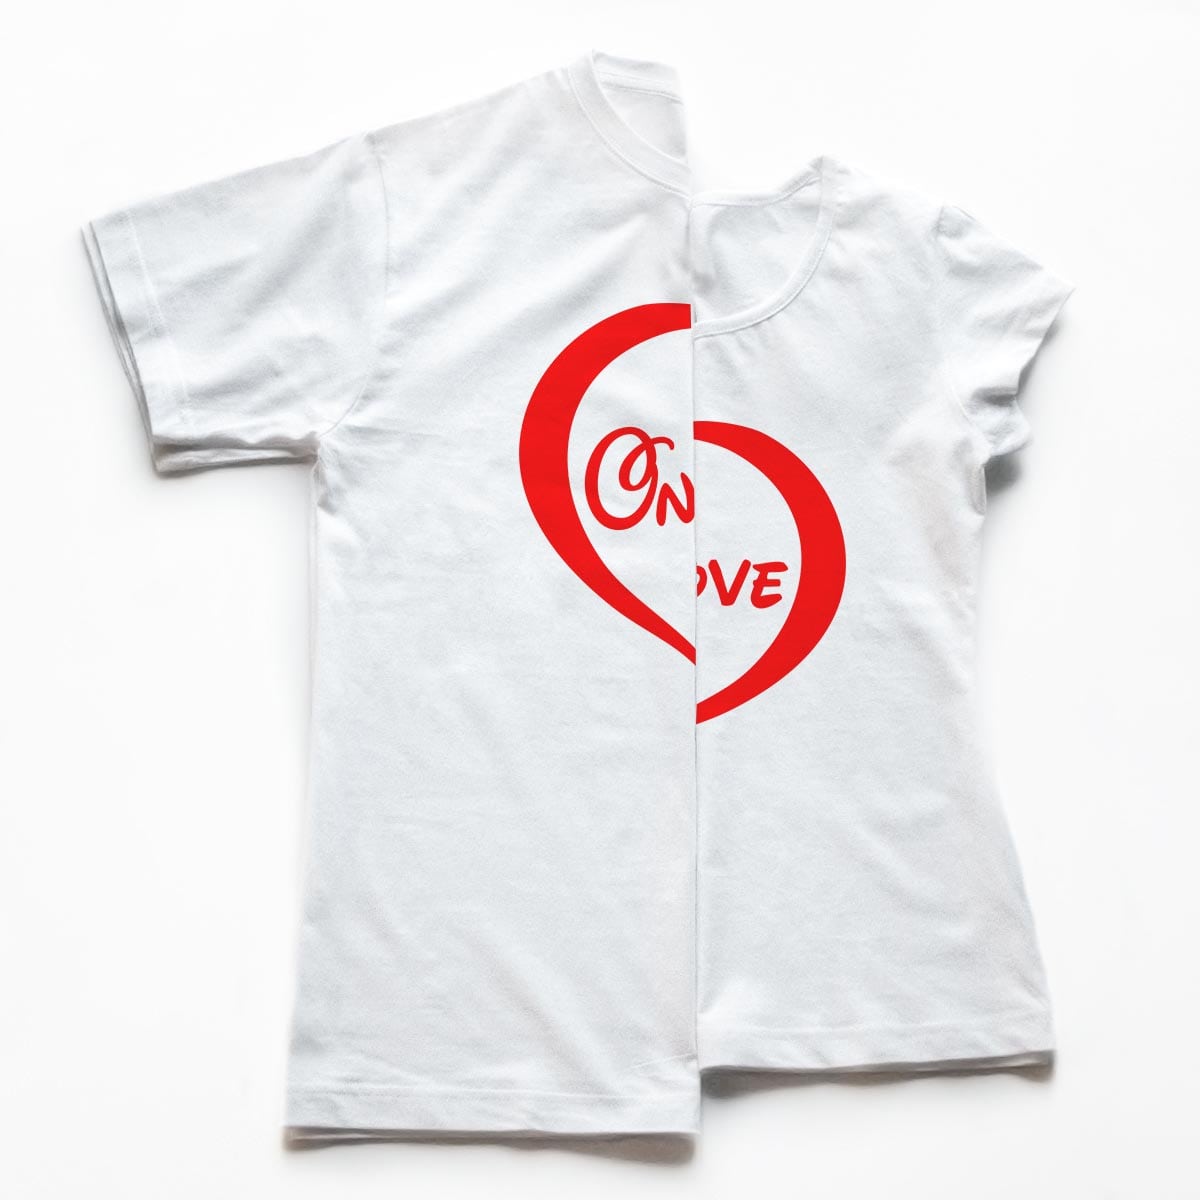 Tricouri cupluri 2 Heart , detaliu personalizare tricouri albe